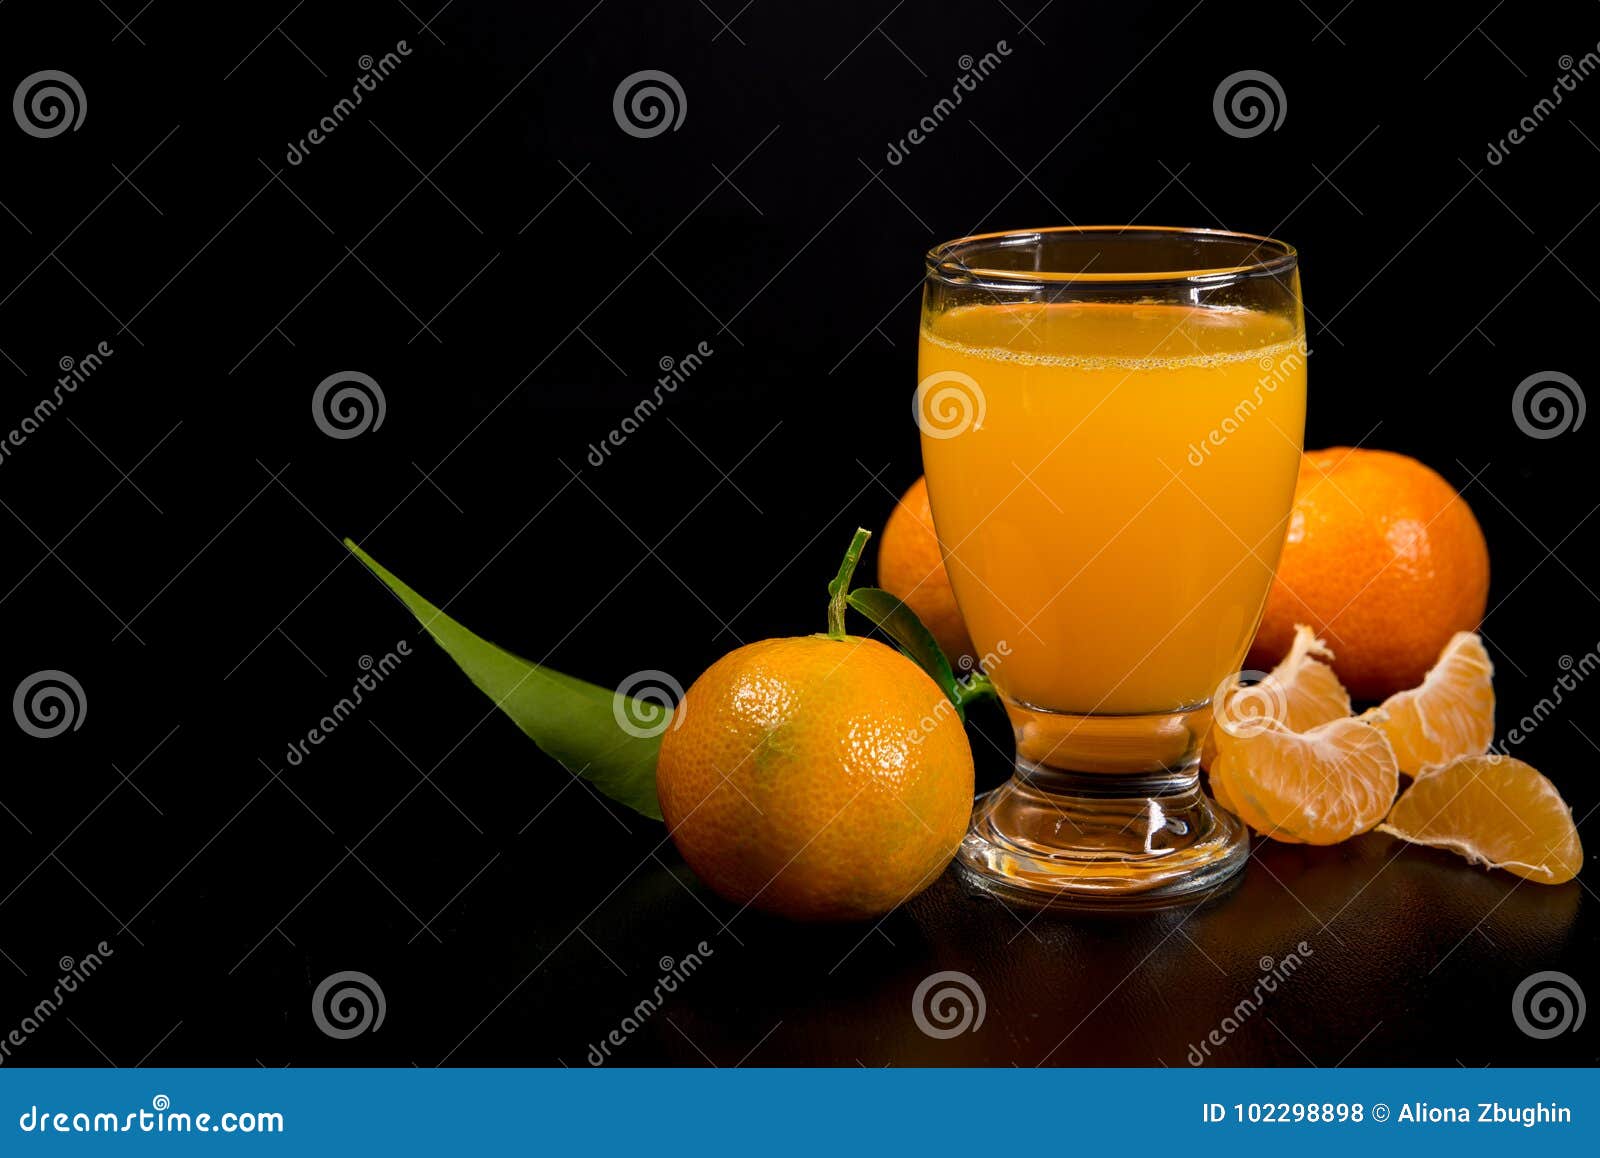 Mandarin Juice on Black Background Stock Photo - Image of leaf, juice ...